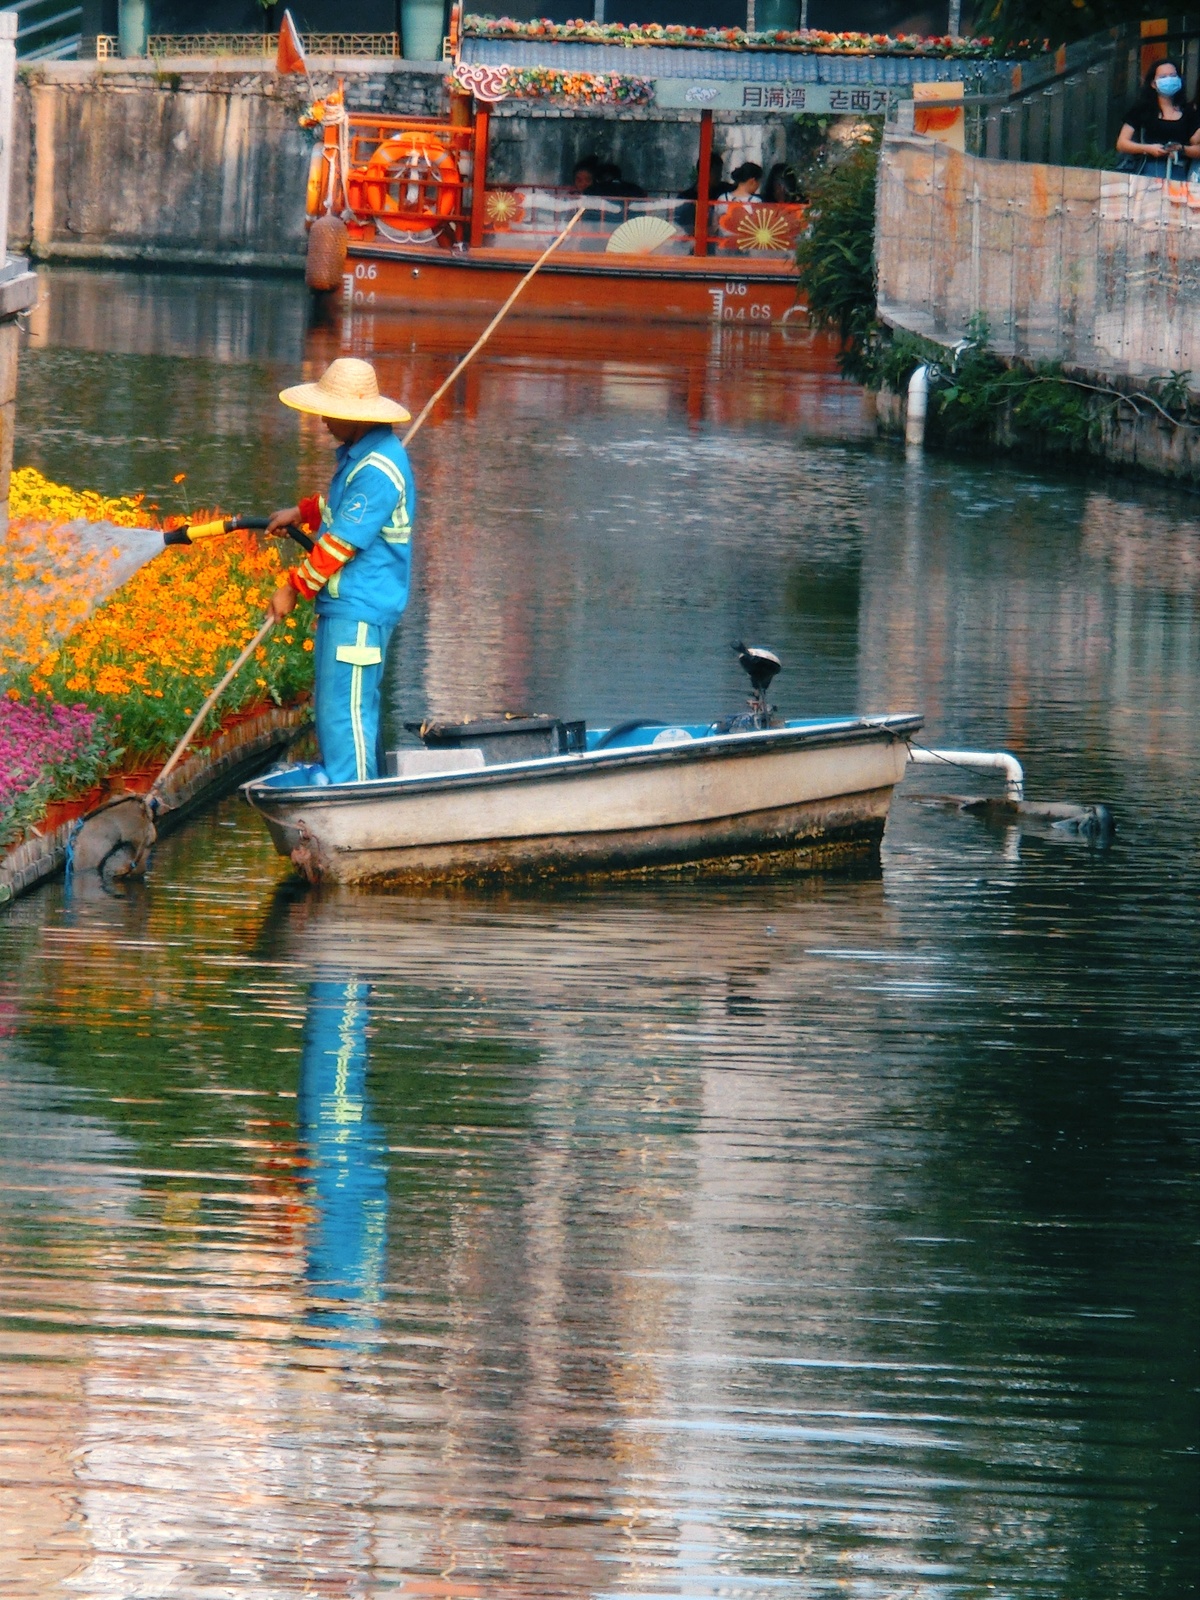 一位戴帽子的男人在一条小船上钓鱼 船在水上运河中。